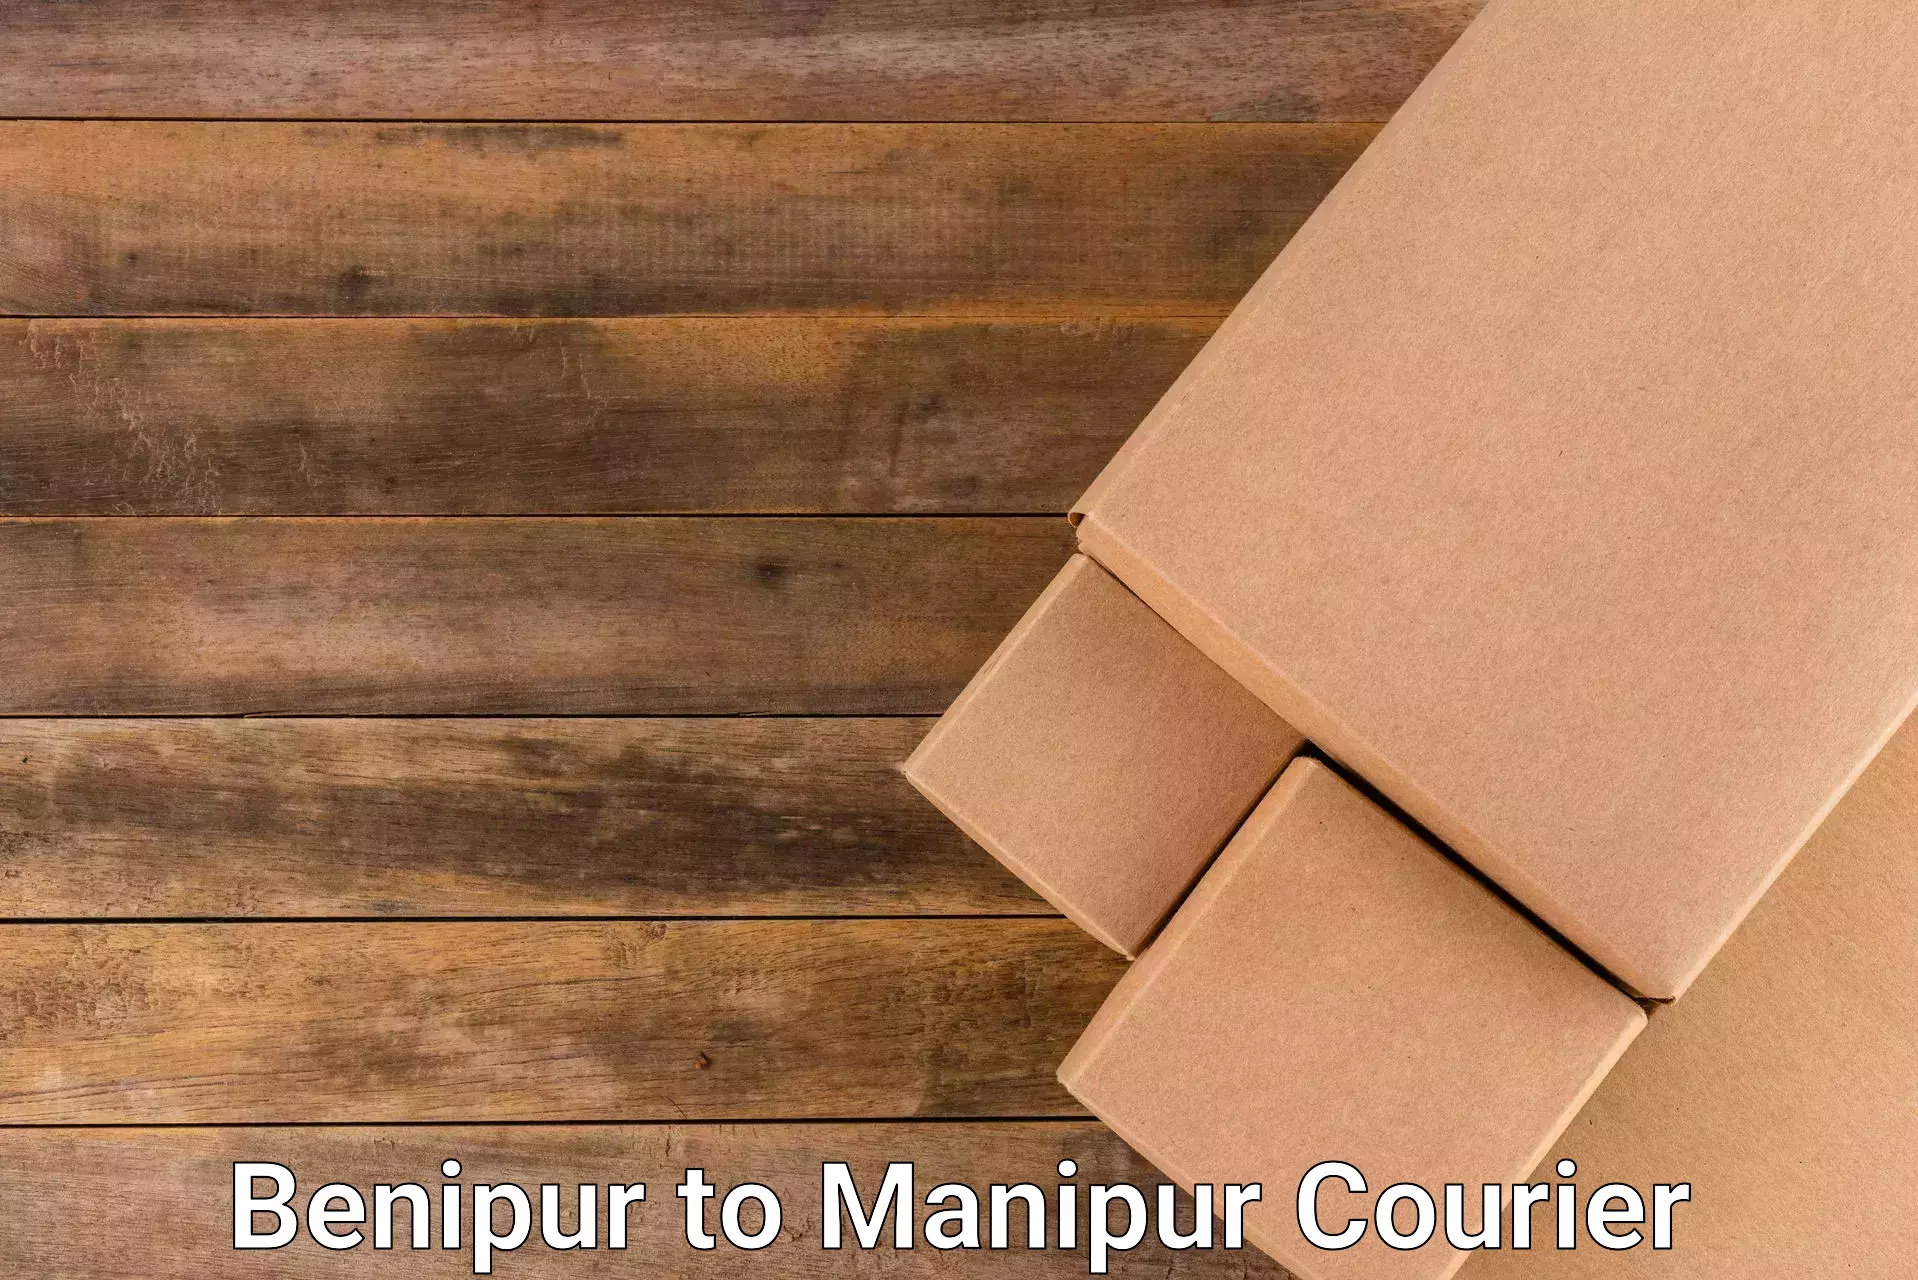 Courier service comparison Benipur to IIIT Senapati